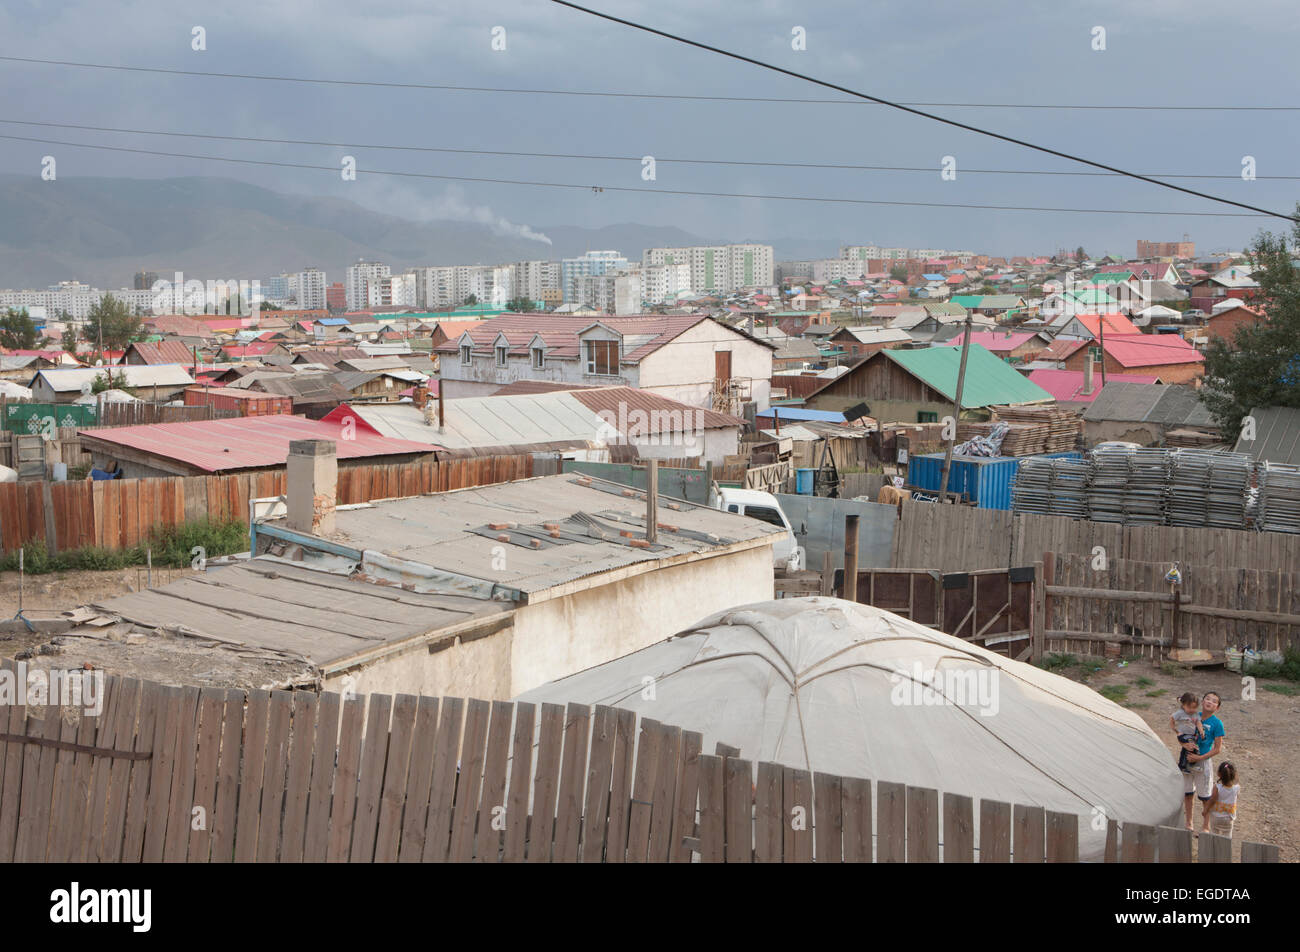 Chingeltey District of Ulaanbaatar, Ulaanbaatar, Mongolia Stock Photo